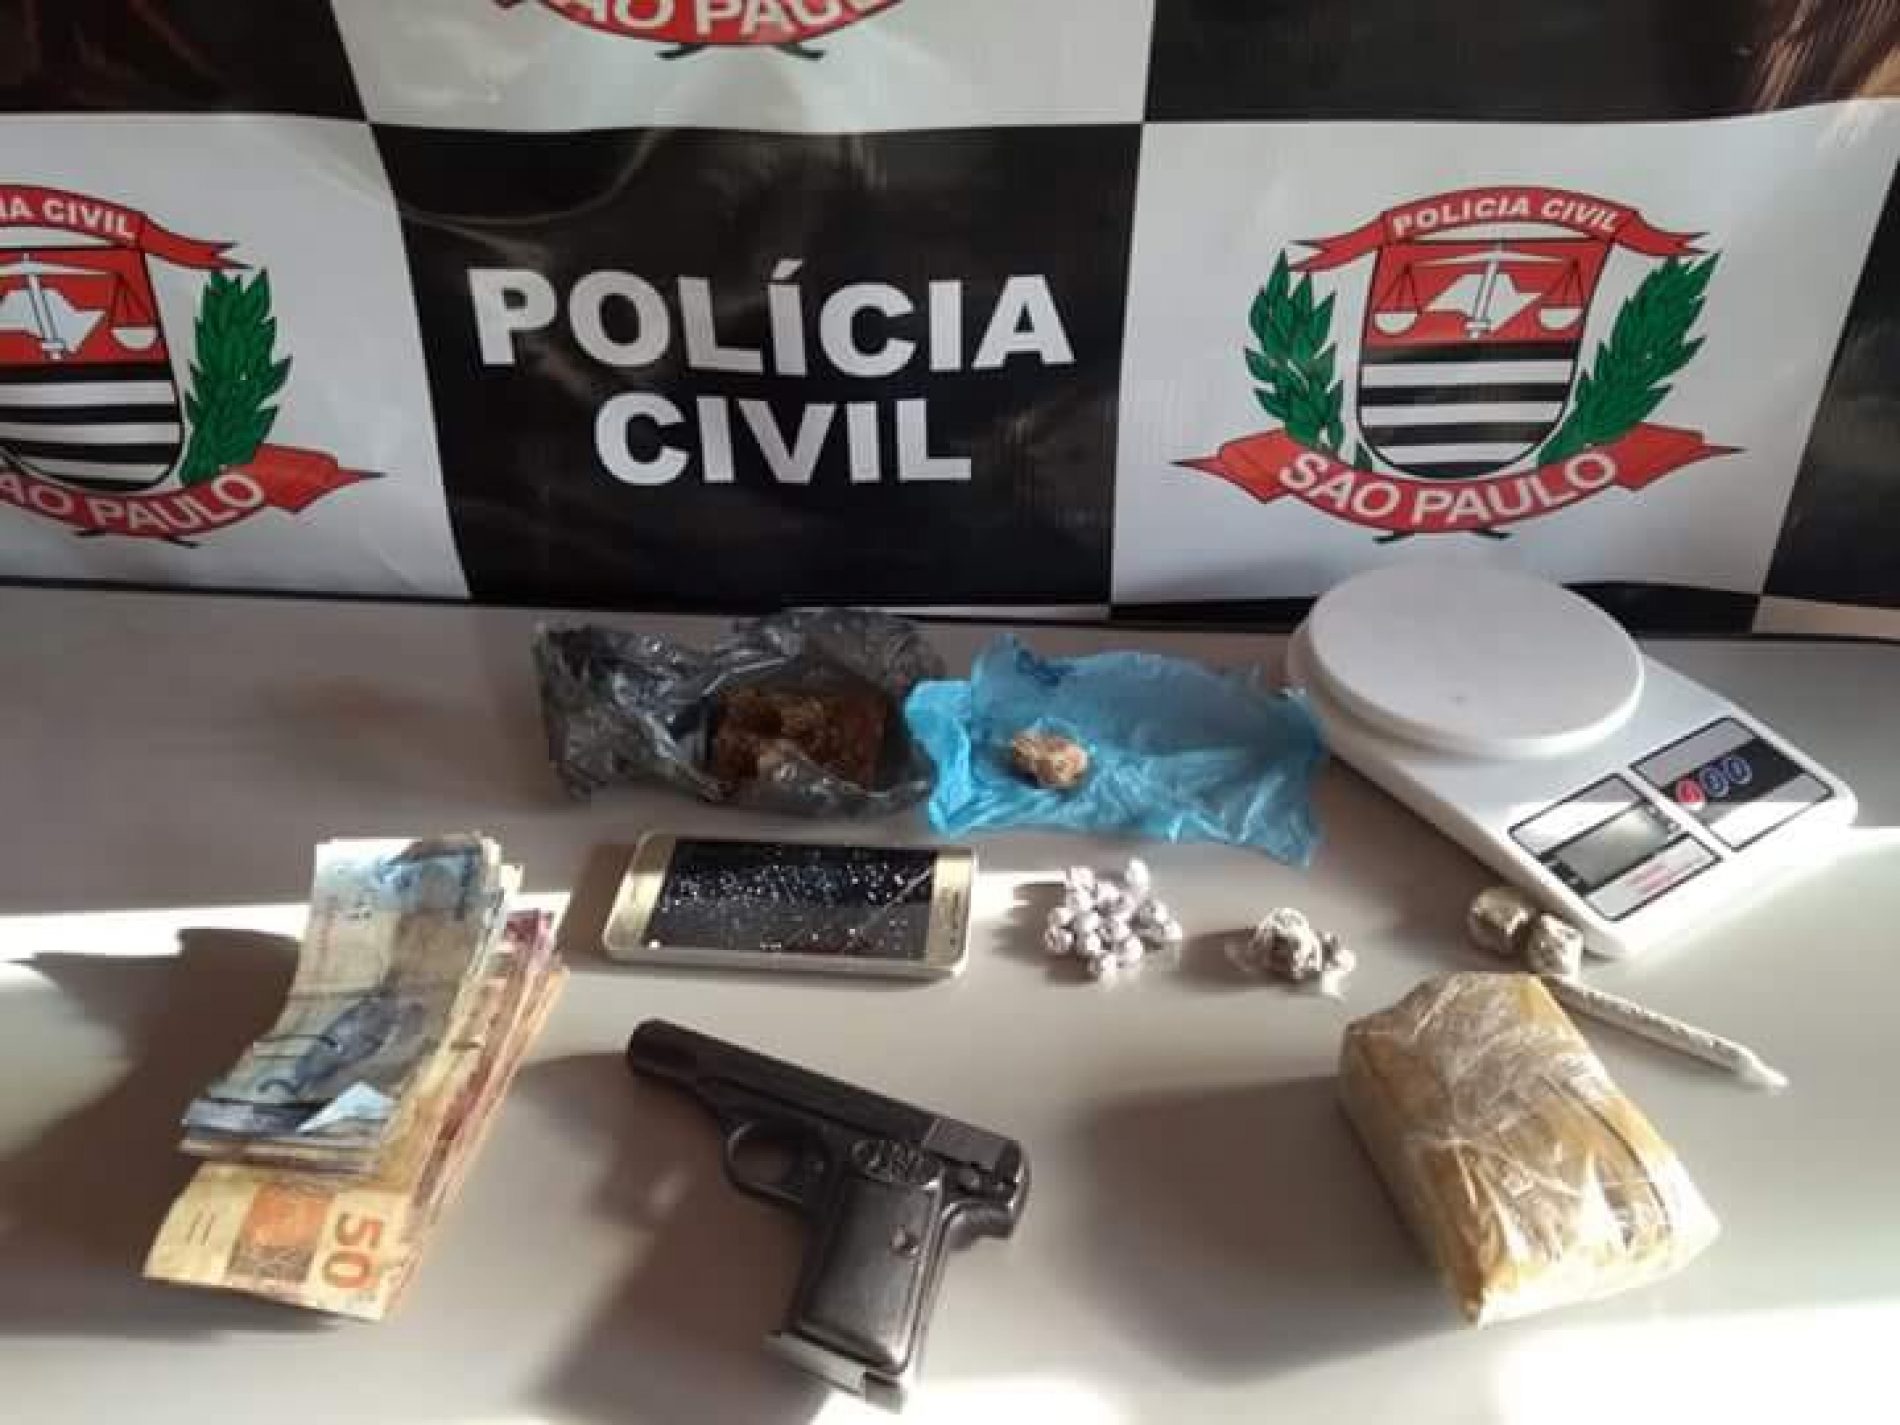 BEBEDOURO: POLÍCIA CIVIL PRENDE 2 ACUSADOS DE TRÁFICO DE DROGAS E POSSE ILEGAL DE ARMA DE FOGO